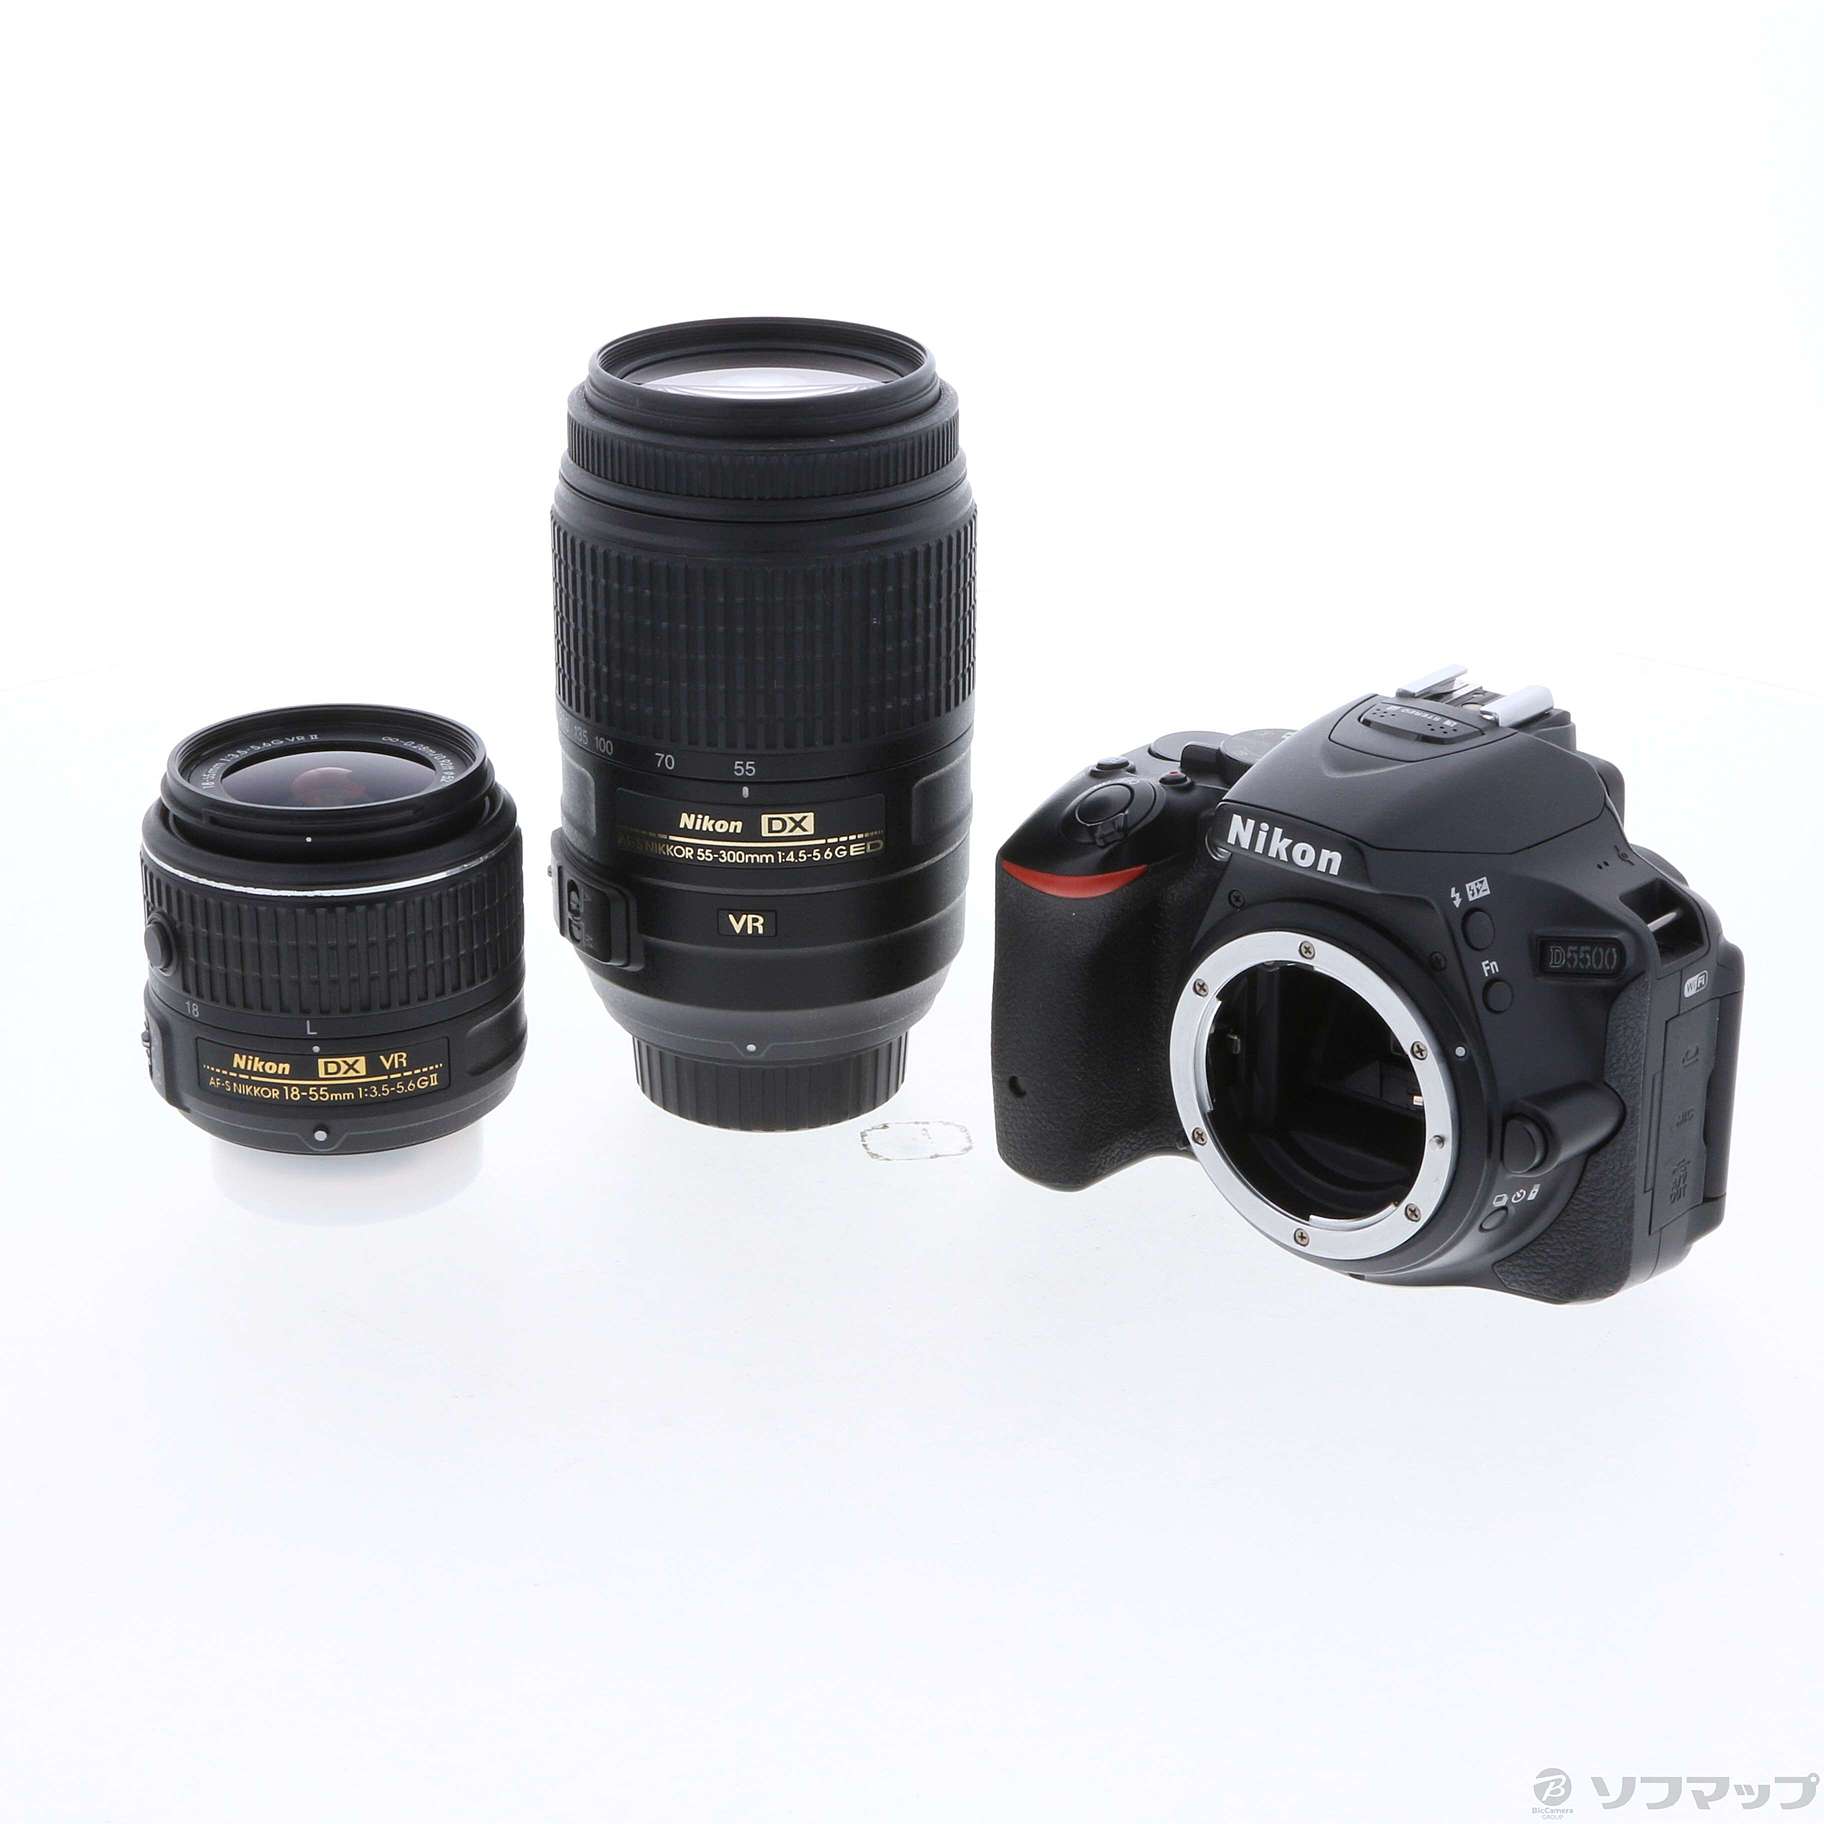 Nikon D5500 ダブルズームレンズキット